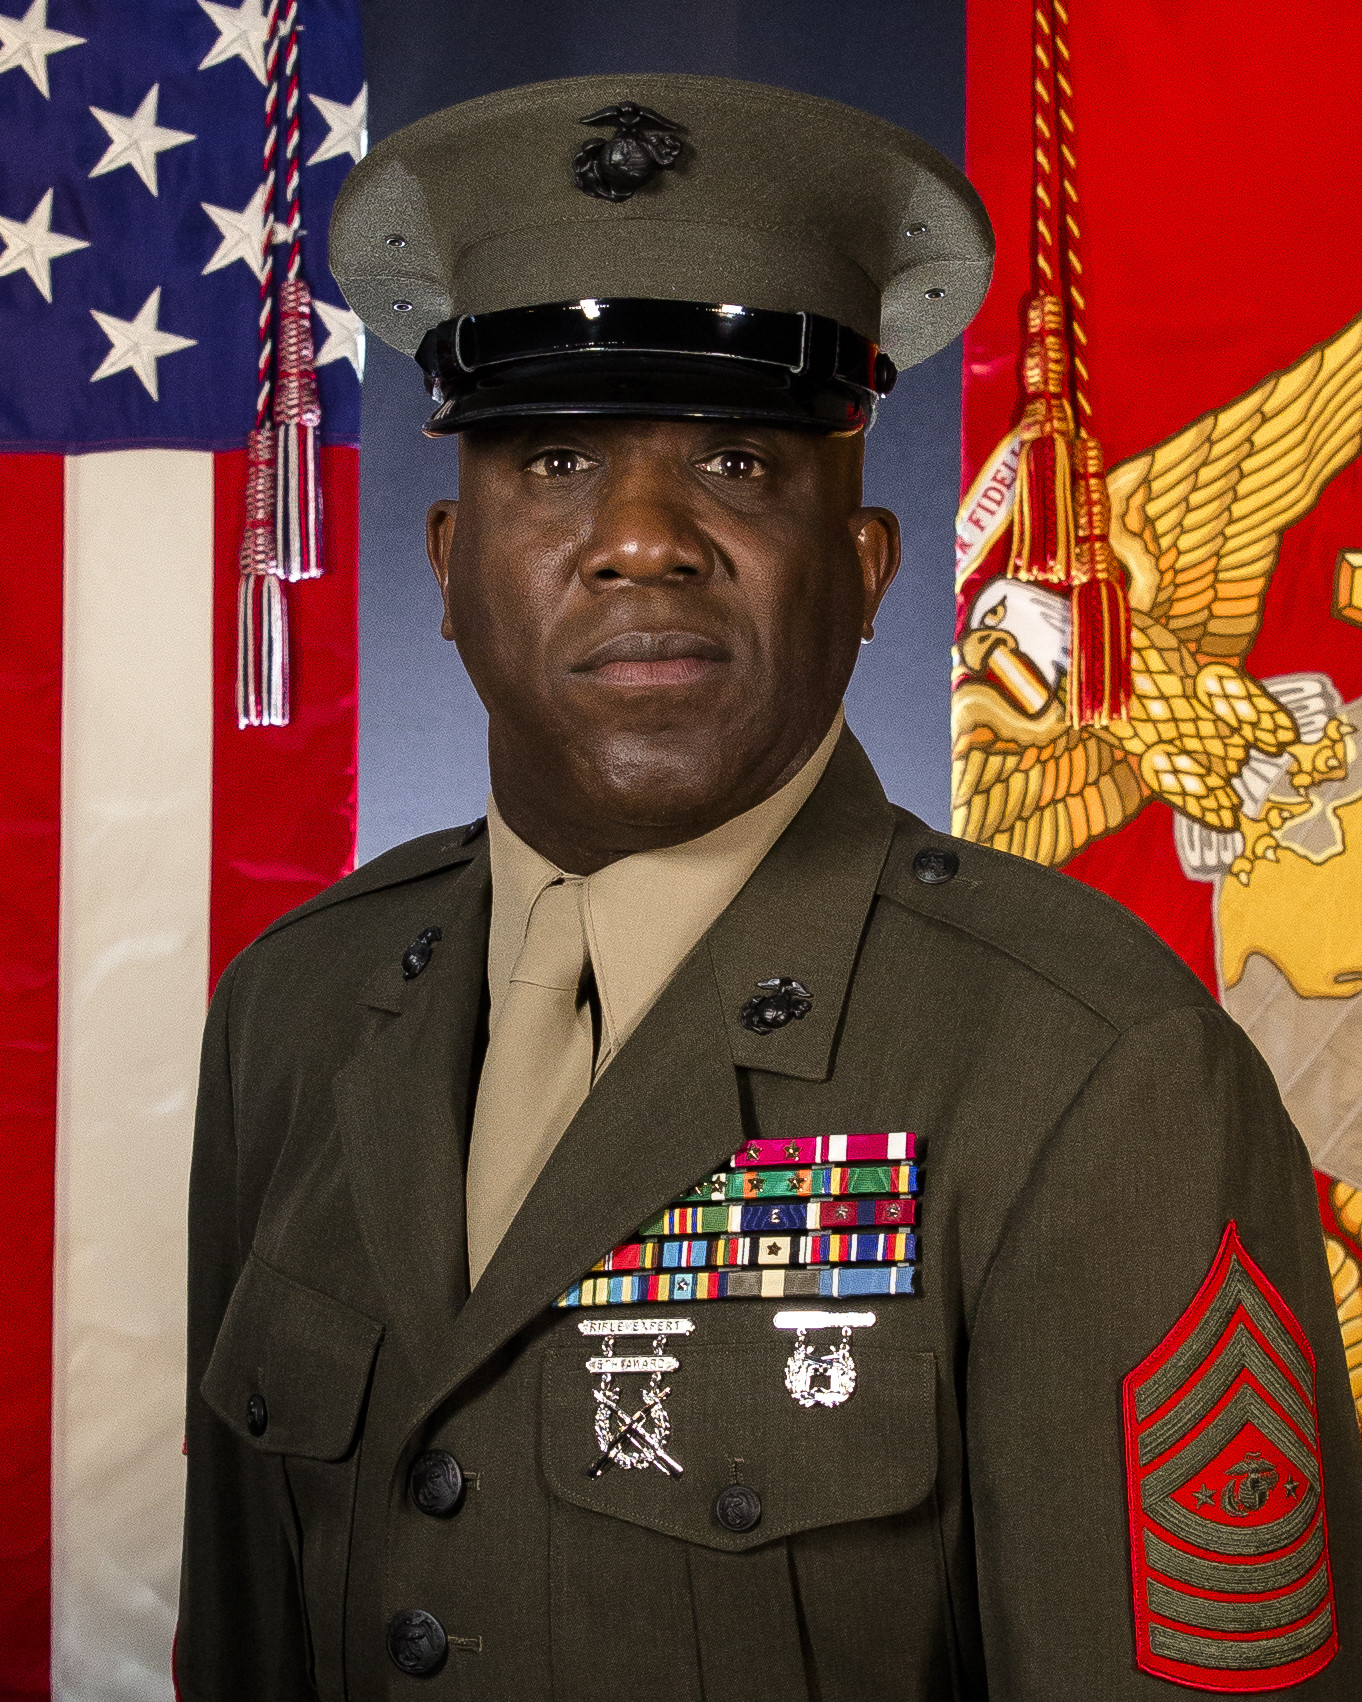 Marine Sergeant Major